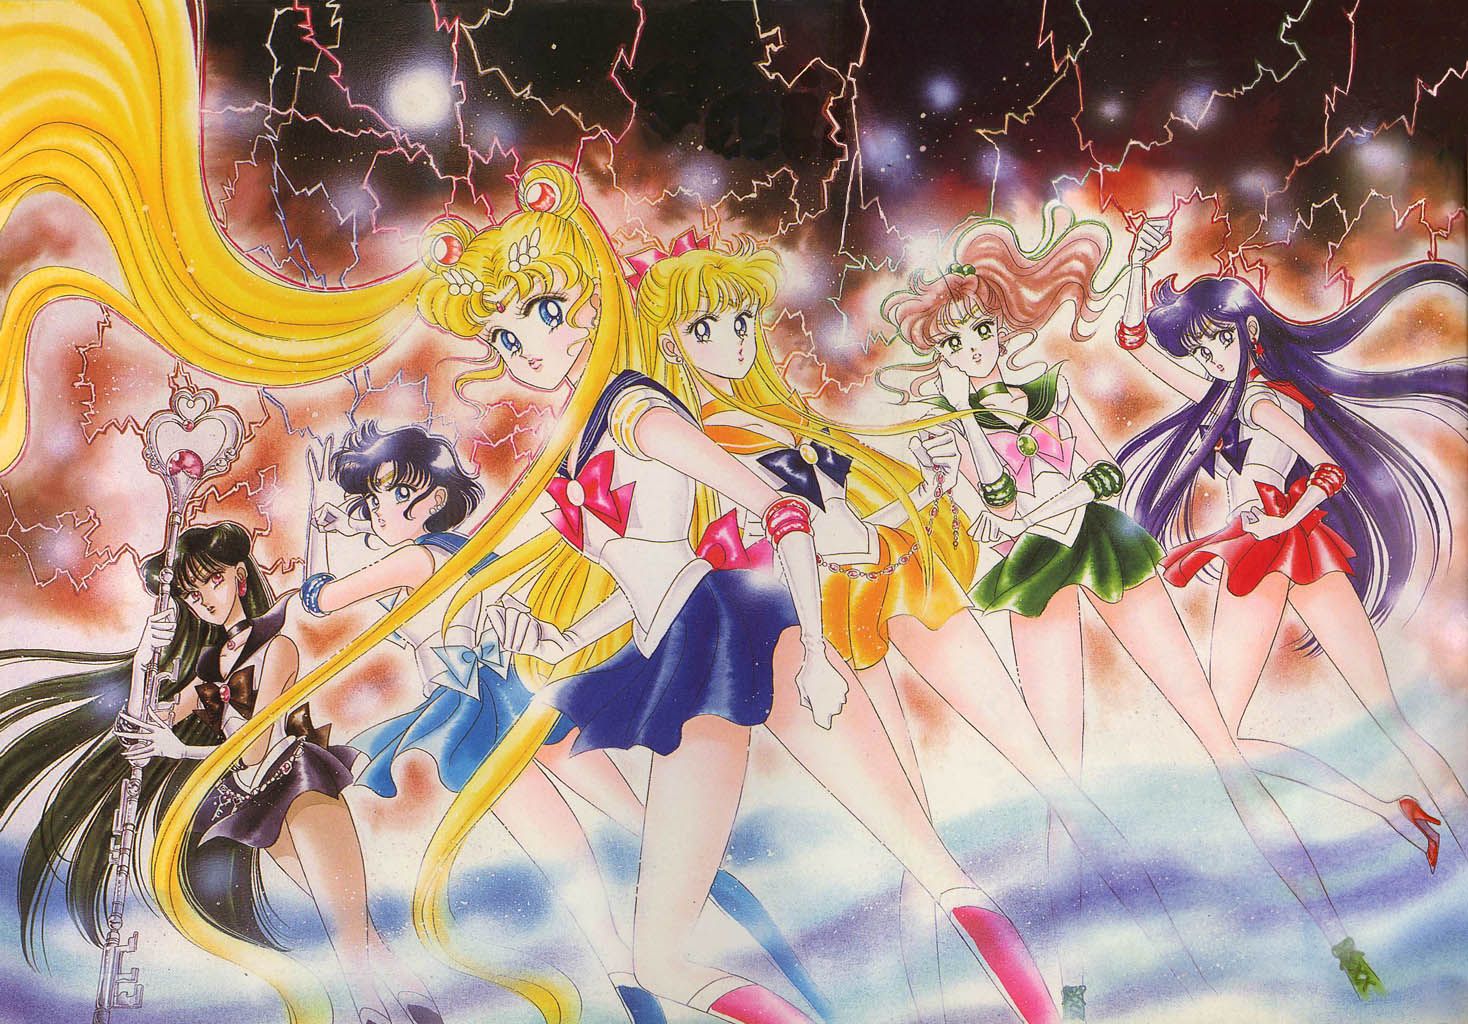 Zergatik axola da Sailor Moon oraindik ia 30 urte geroago?